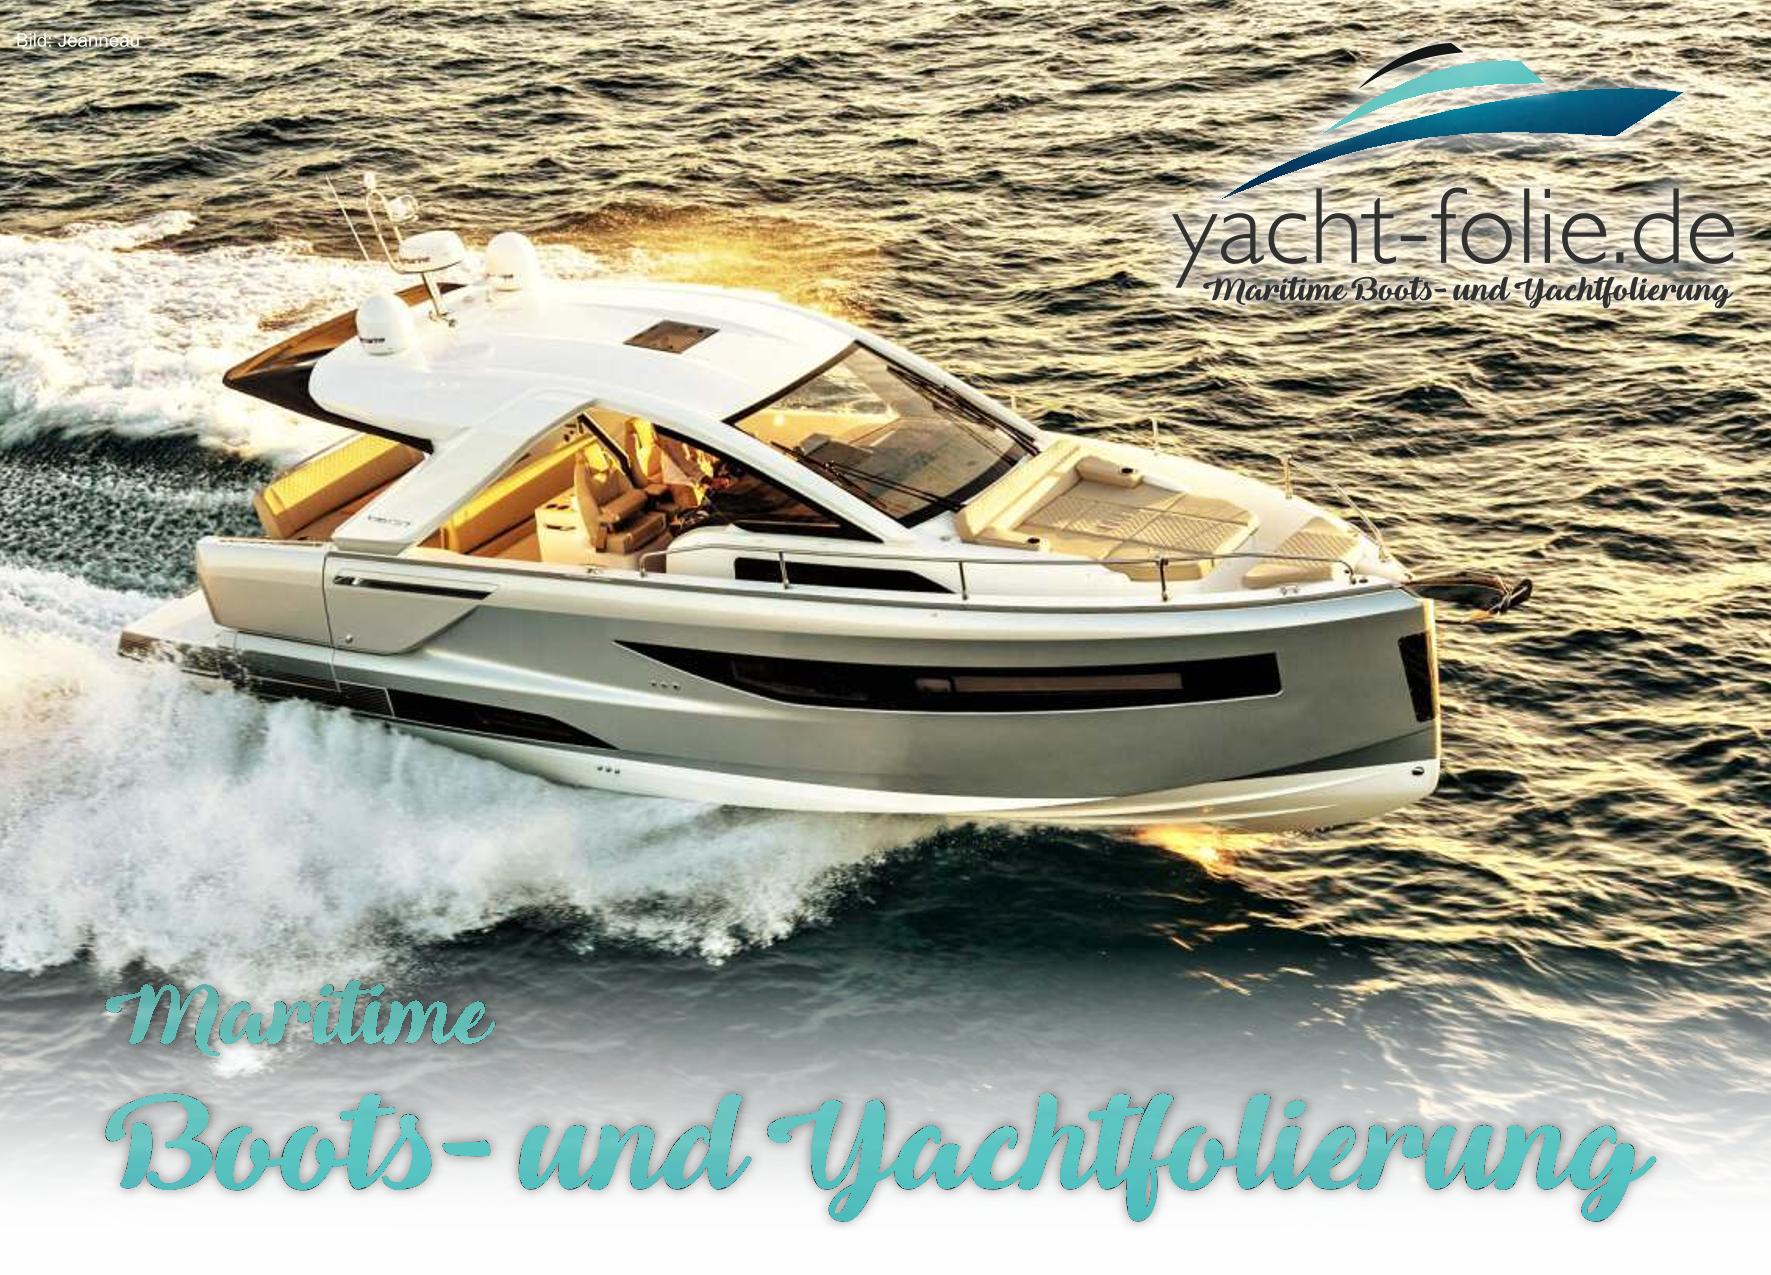 Yacht Folie Katalog 2023 - 2024 mit vielen Darstellungen und Informationen zur Yachtolierung